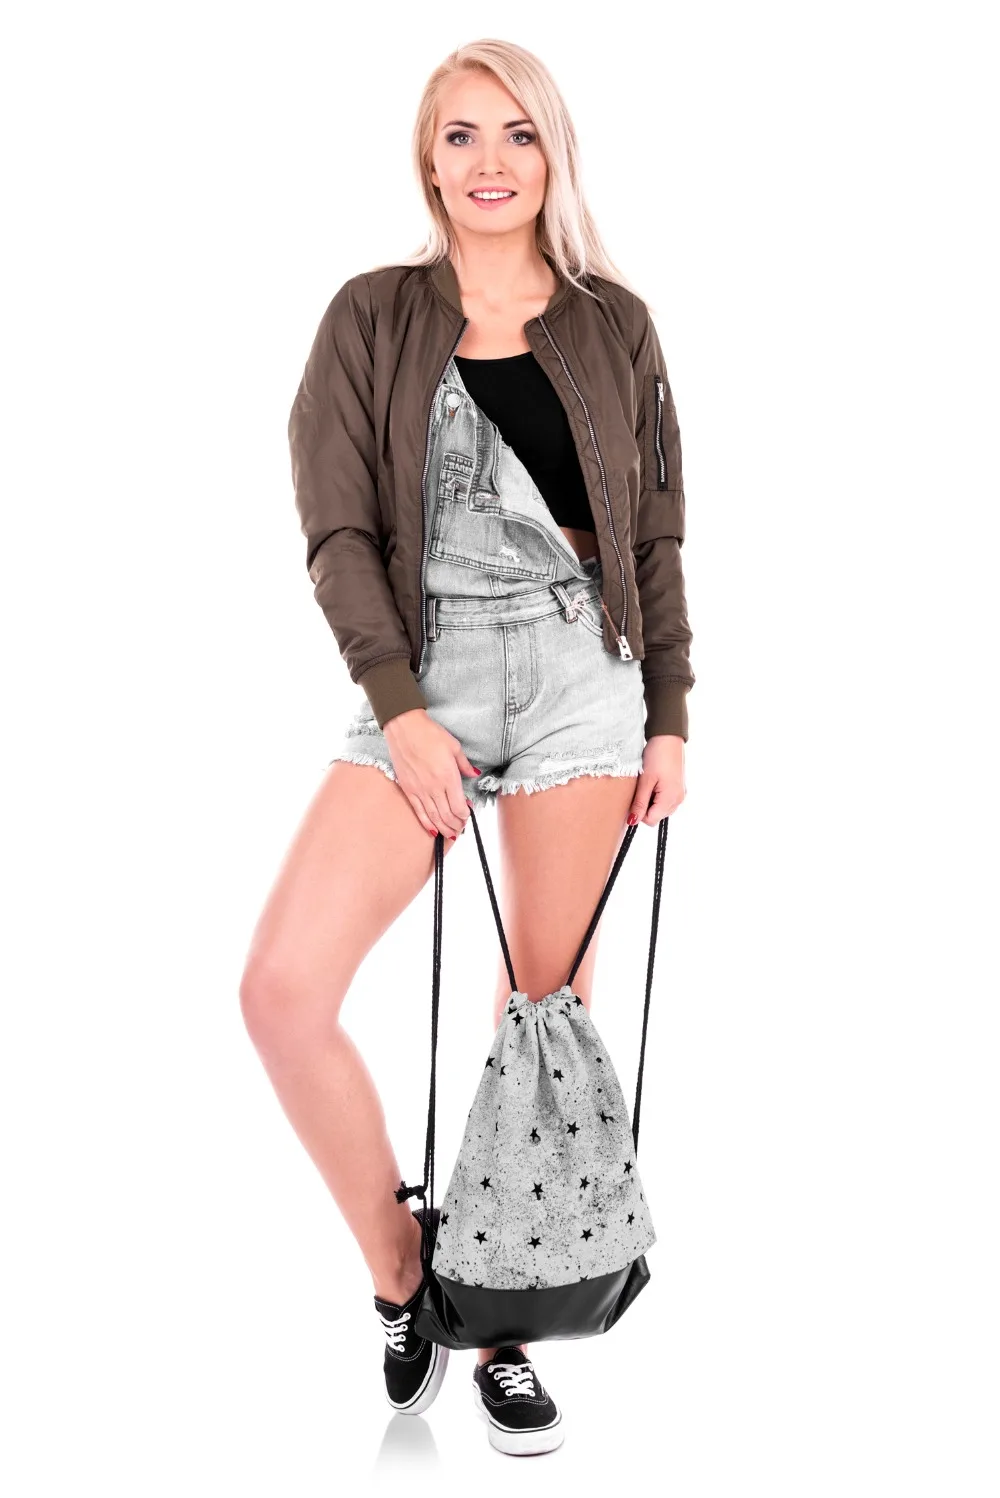 Бетонный черный кожаный рюкзак с принтом звезд для женщин мужской рюкзак для путешествий Mochila Feminina сумка на шнурке